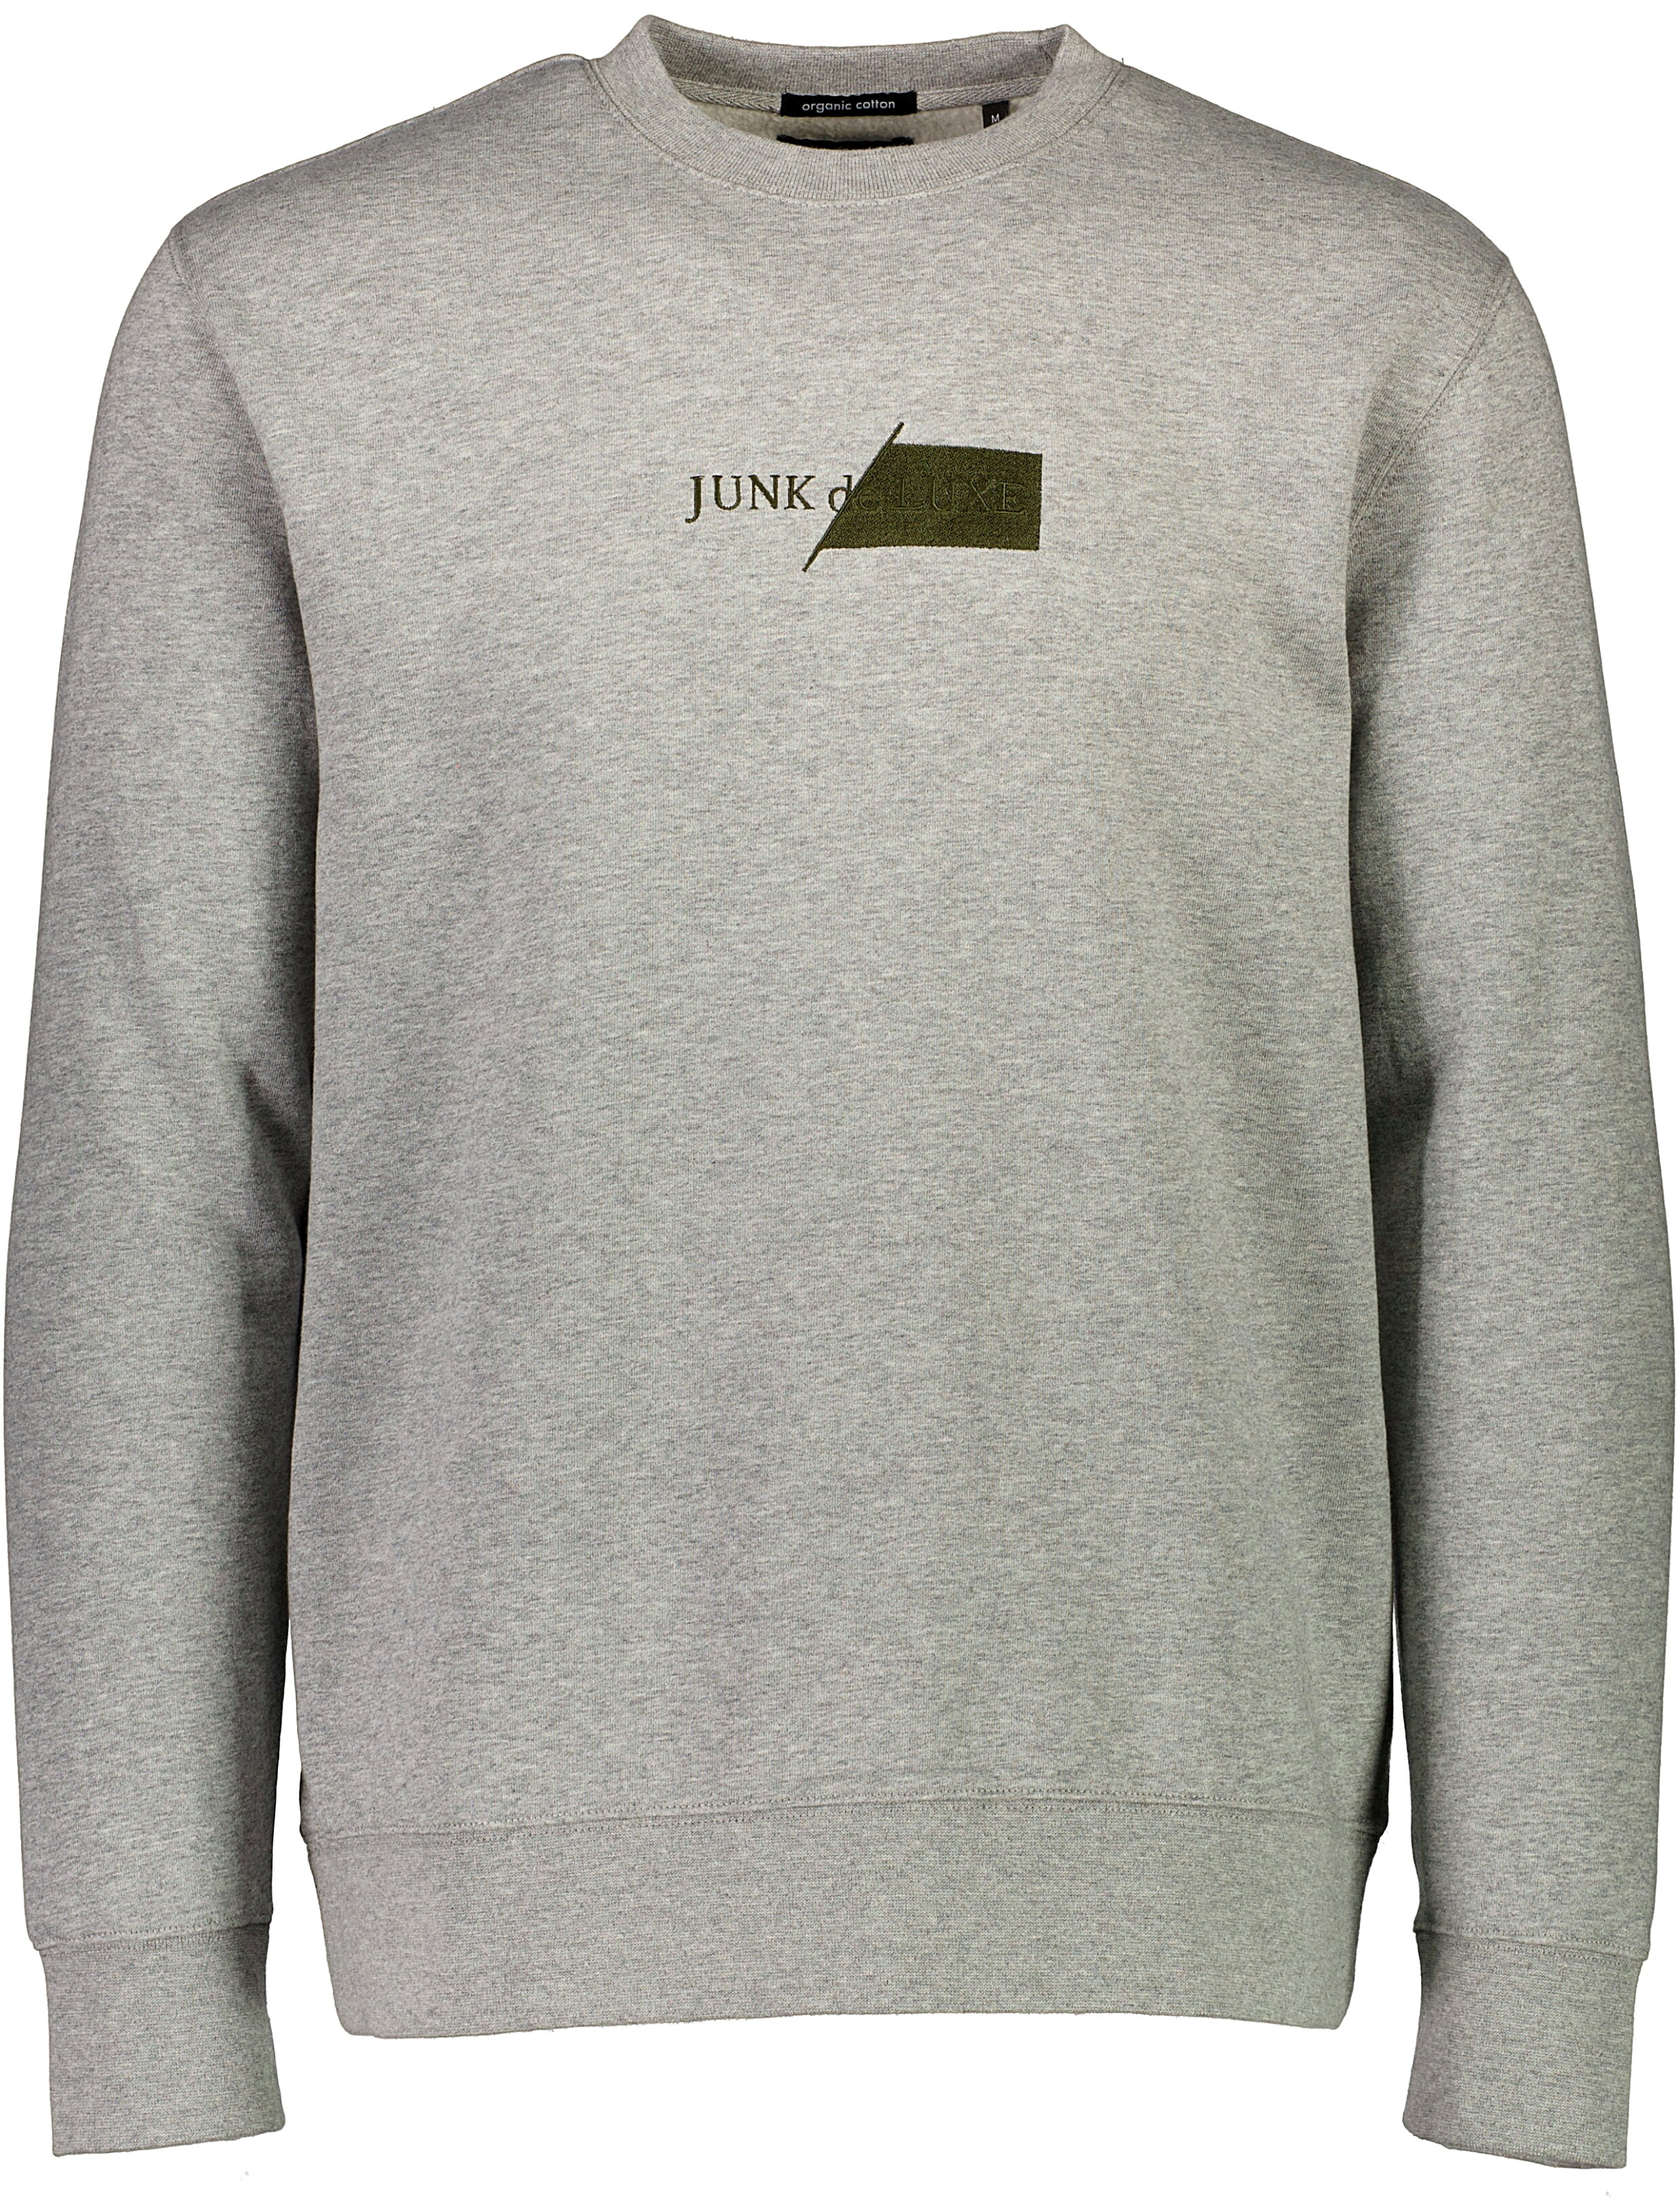 Junk de Luxe Sweatshirt grå / grey mel